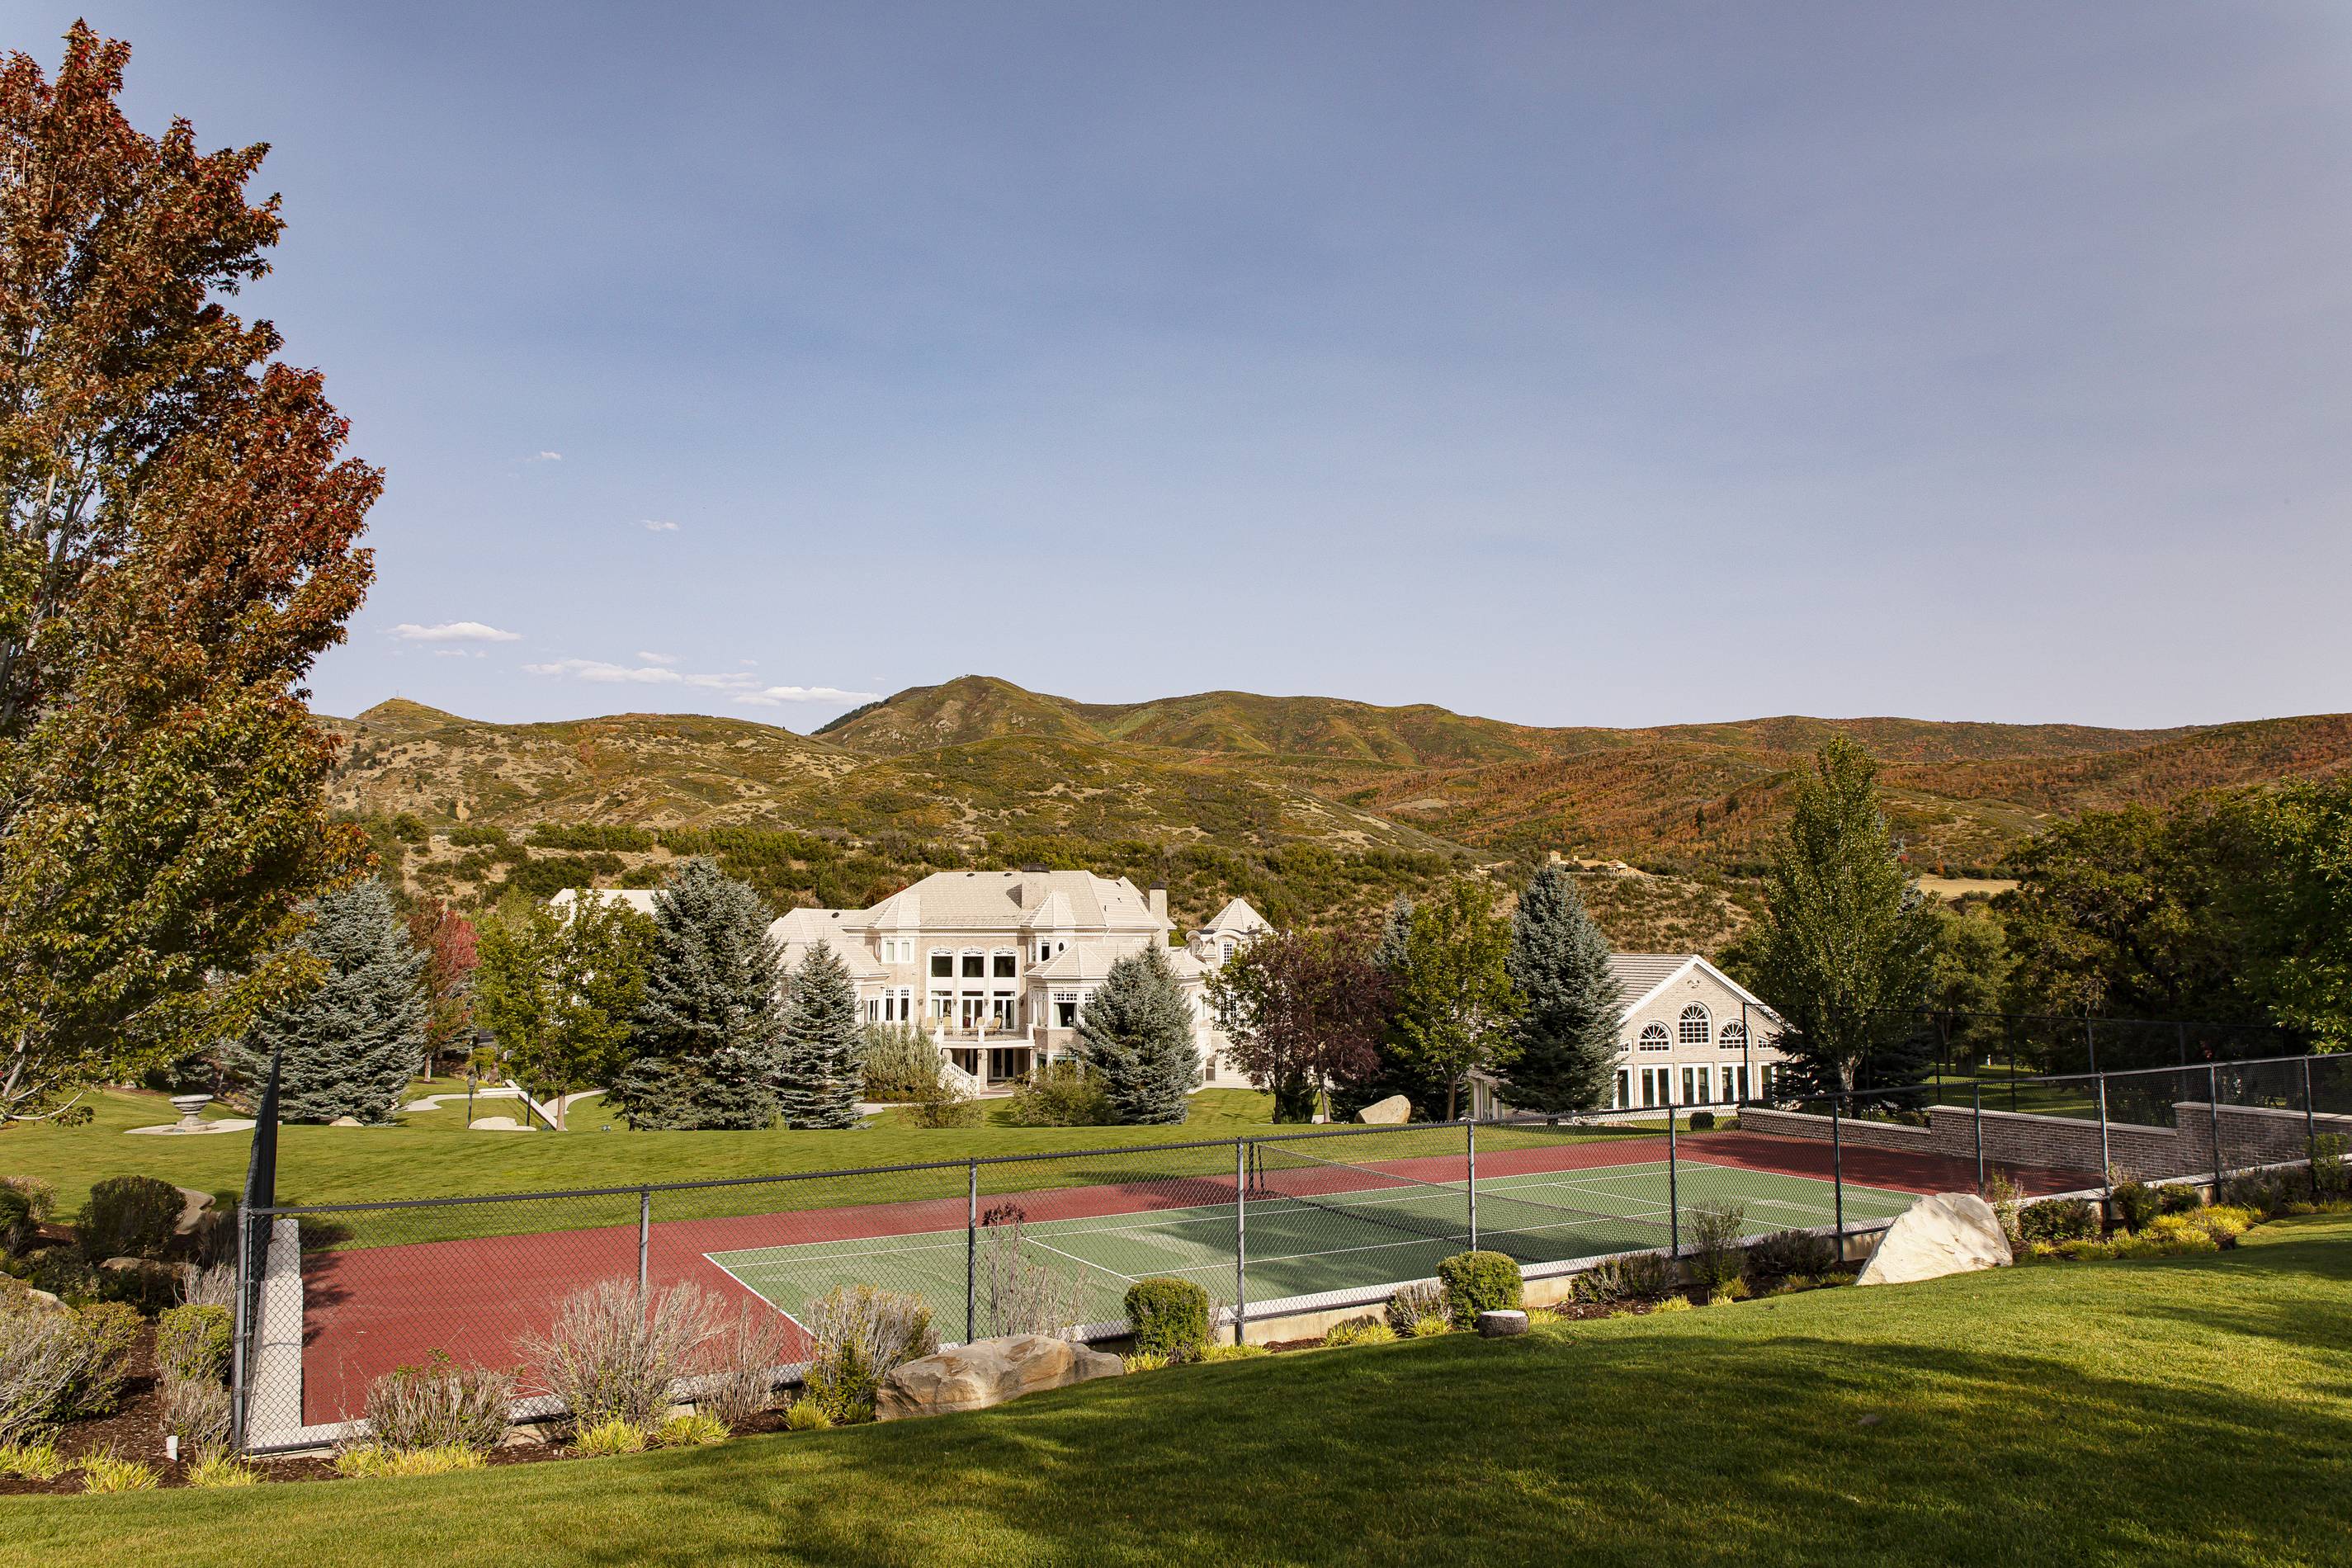 Springville, Utah home exterior tennis court